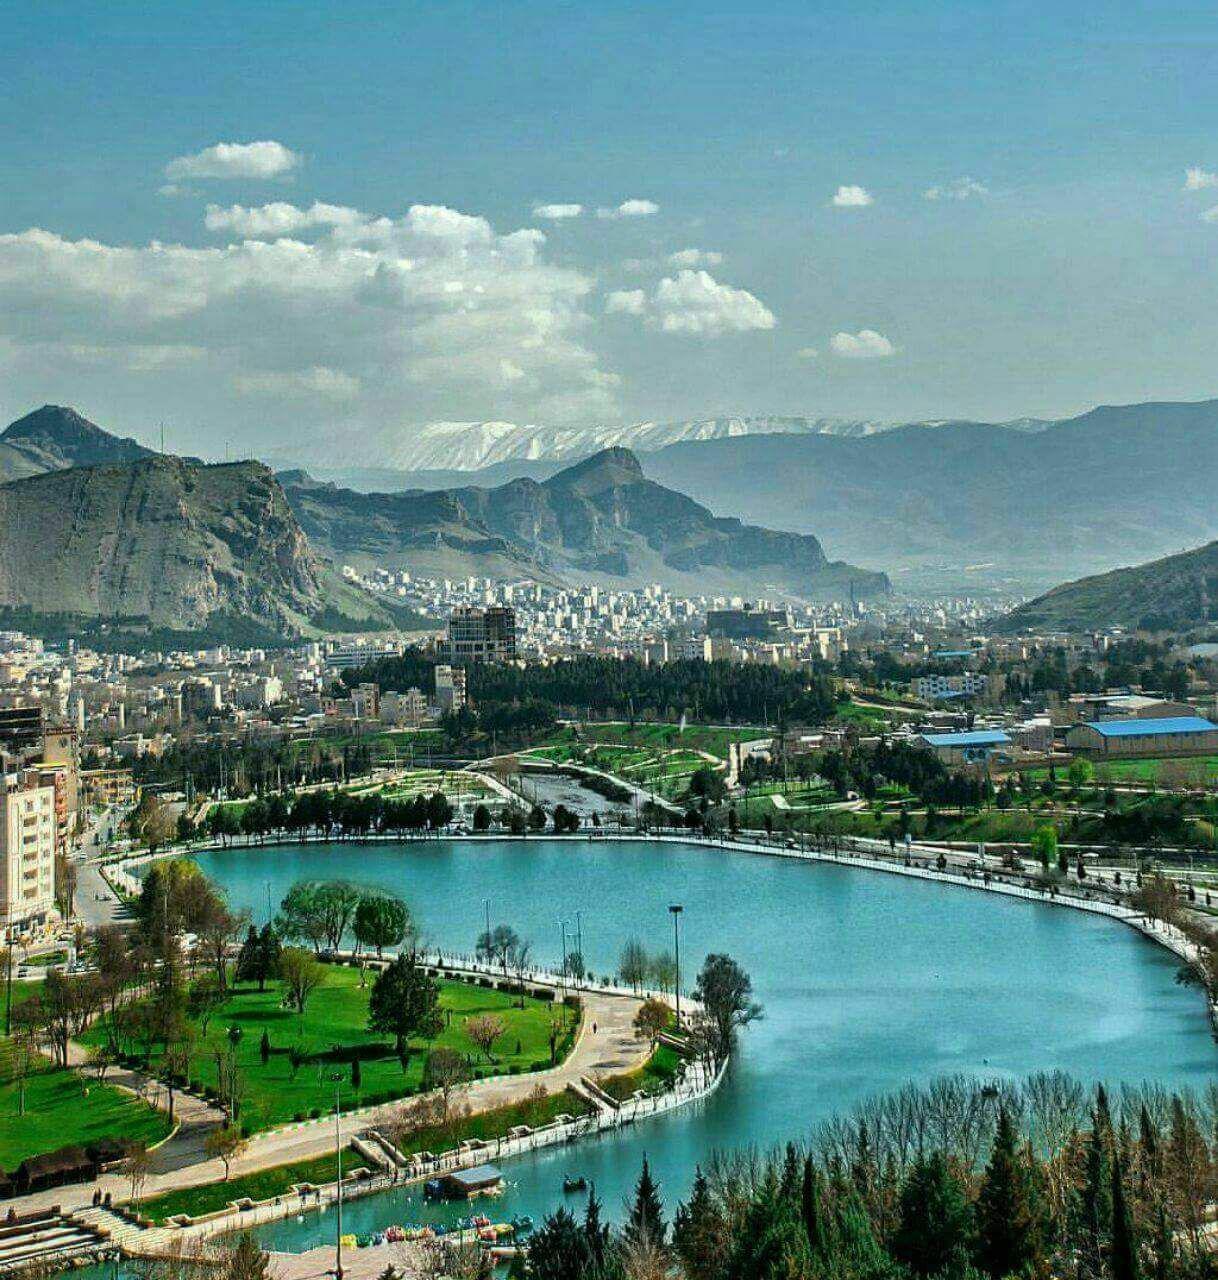 دریاچه کیو ، خرم آباد ( #لرستان) نمایی فوق العاده از دریاچه کیو(Q)تنها دریاچه طبیعی درون شهری در ایران **abdolla**